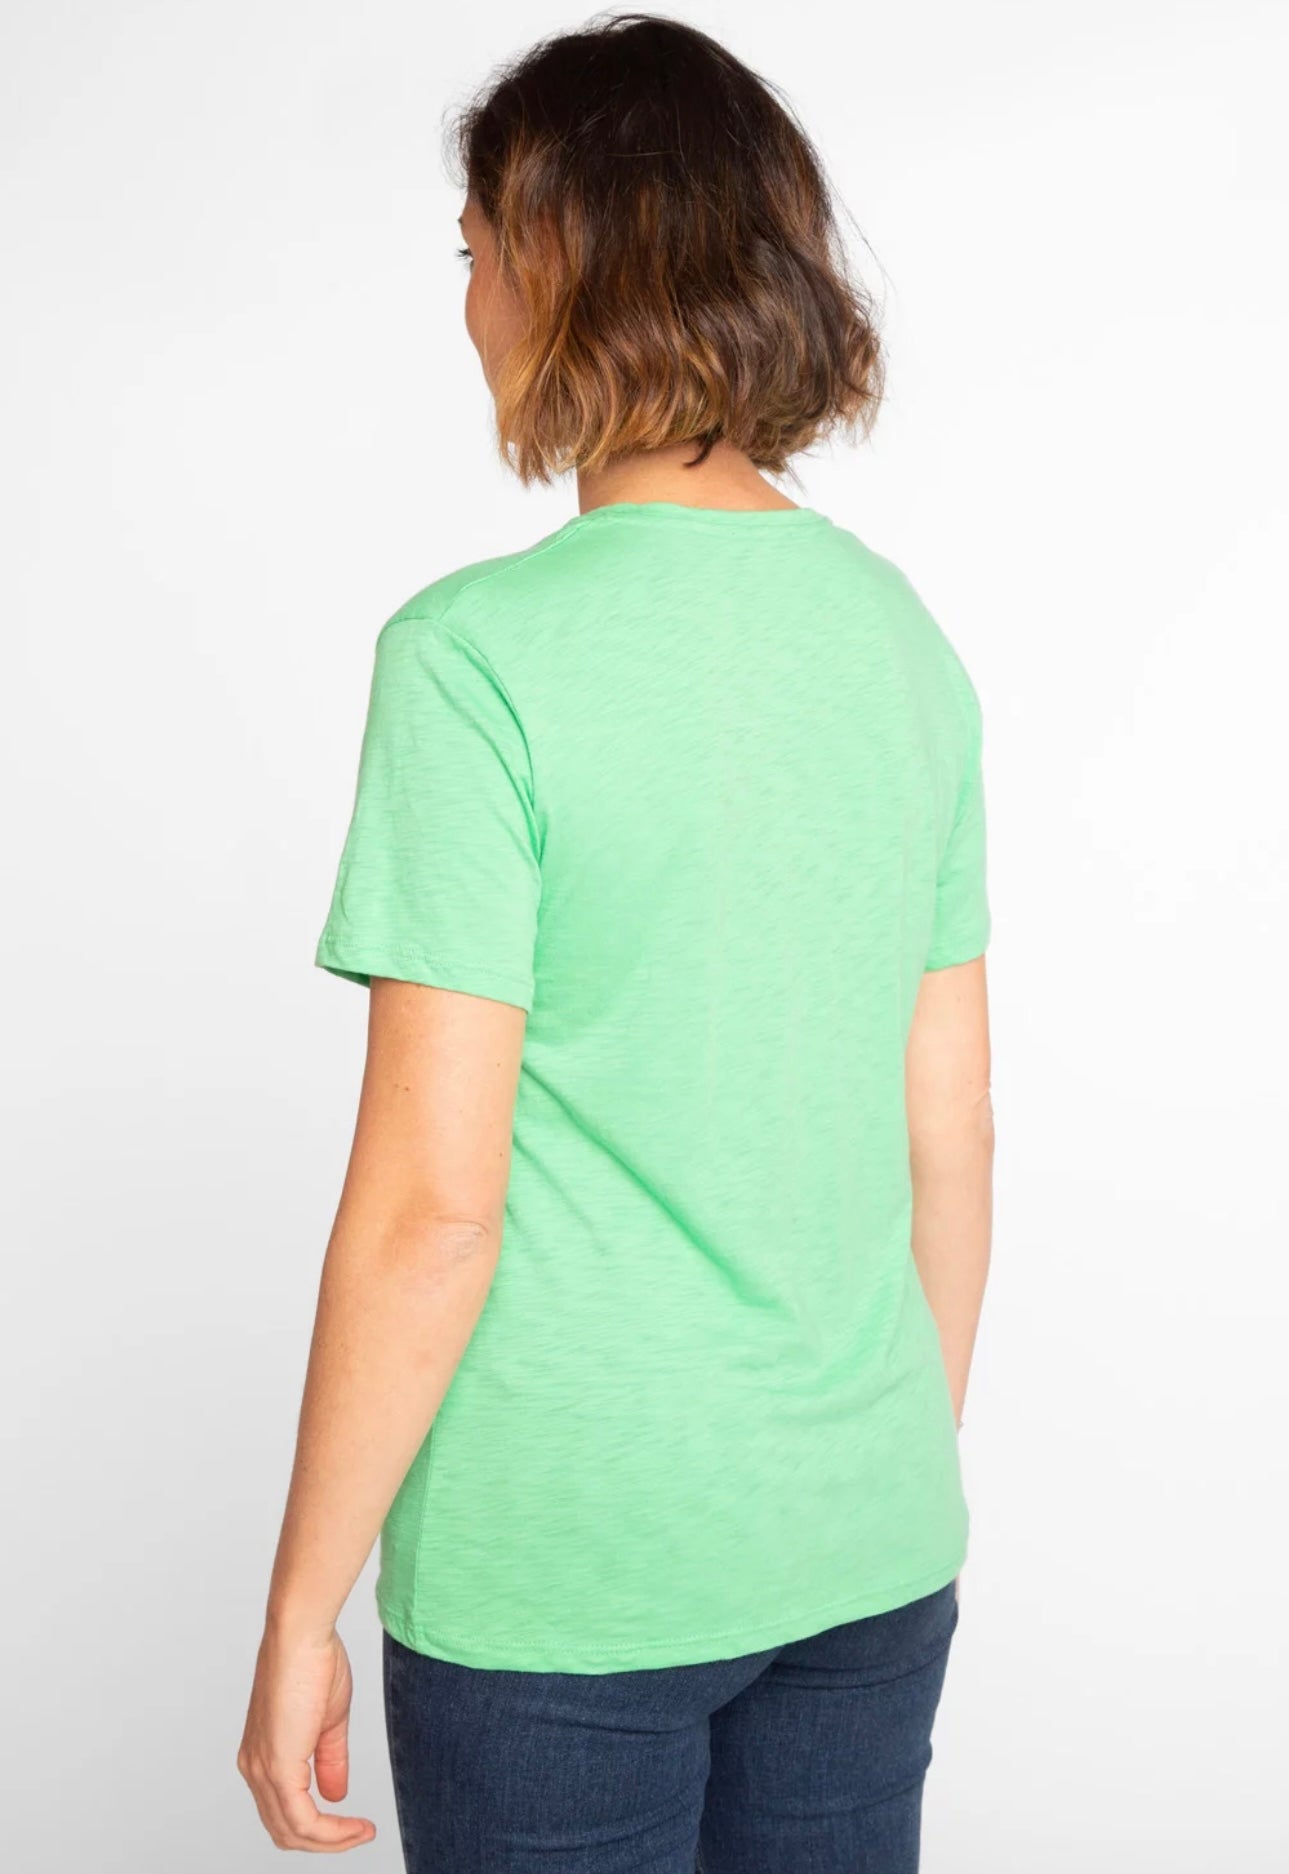 Anonym - T-shirt Esmèe 100% Cotone PIMA Peruviano Green